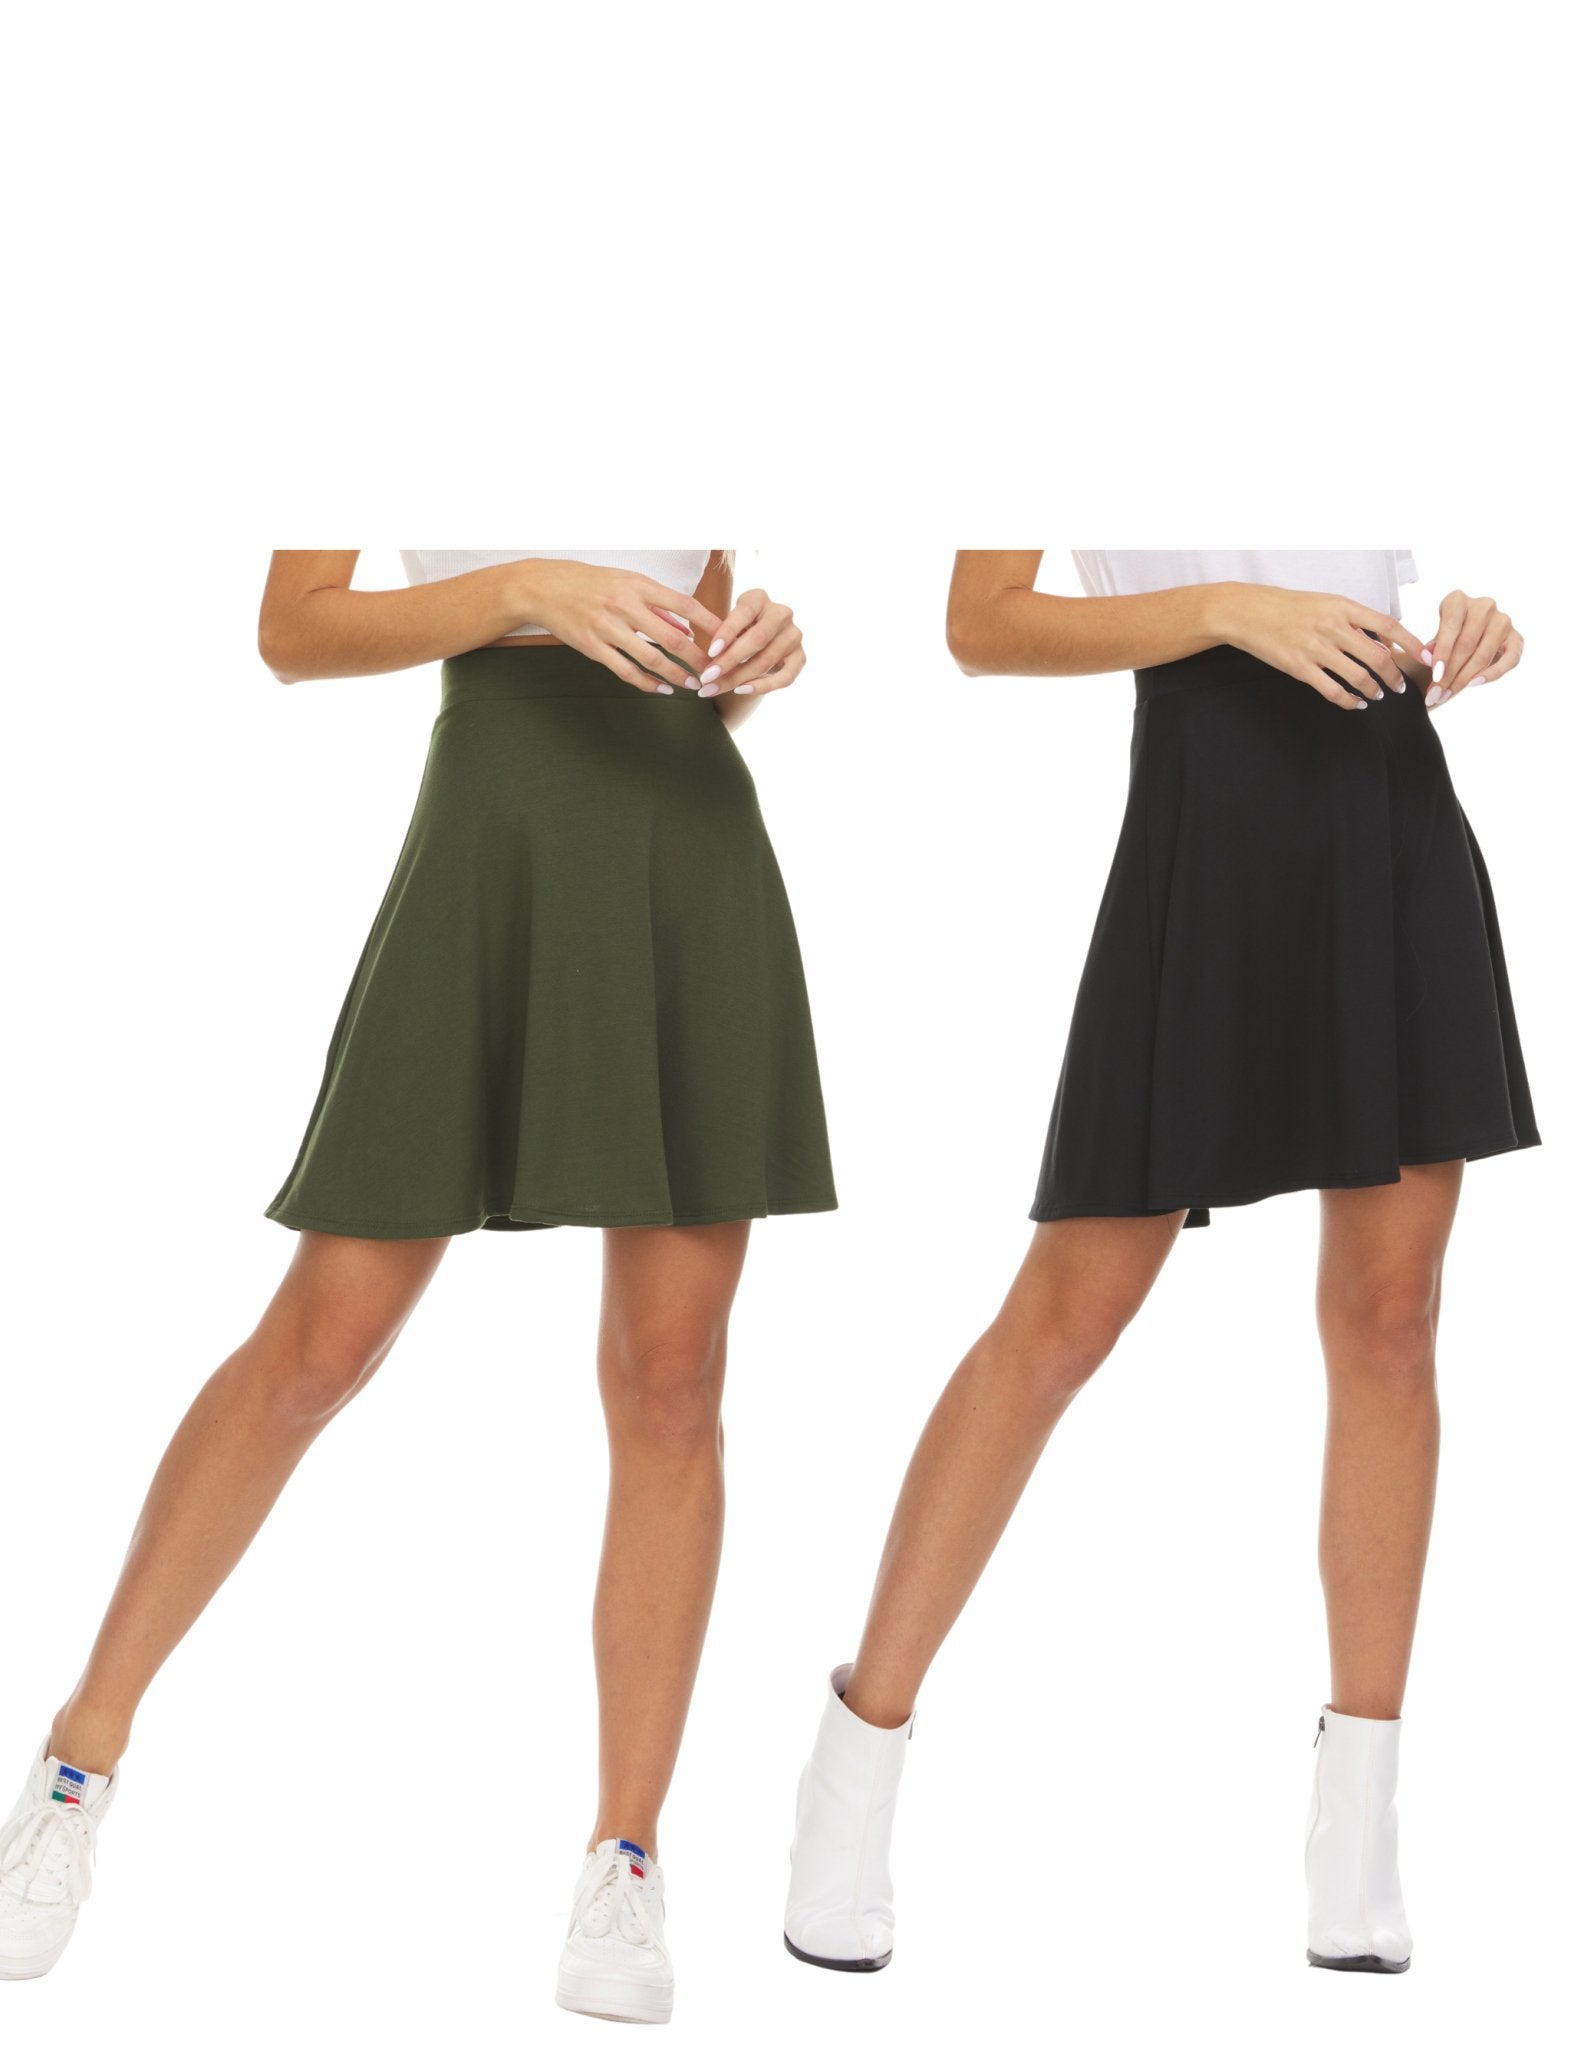 Basic Skater Skirt - 2 Piece Multi Pack - DressbarnSkirts